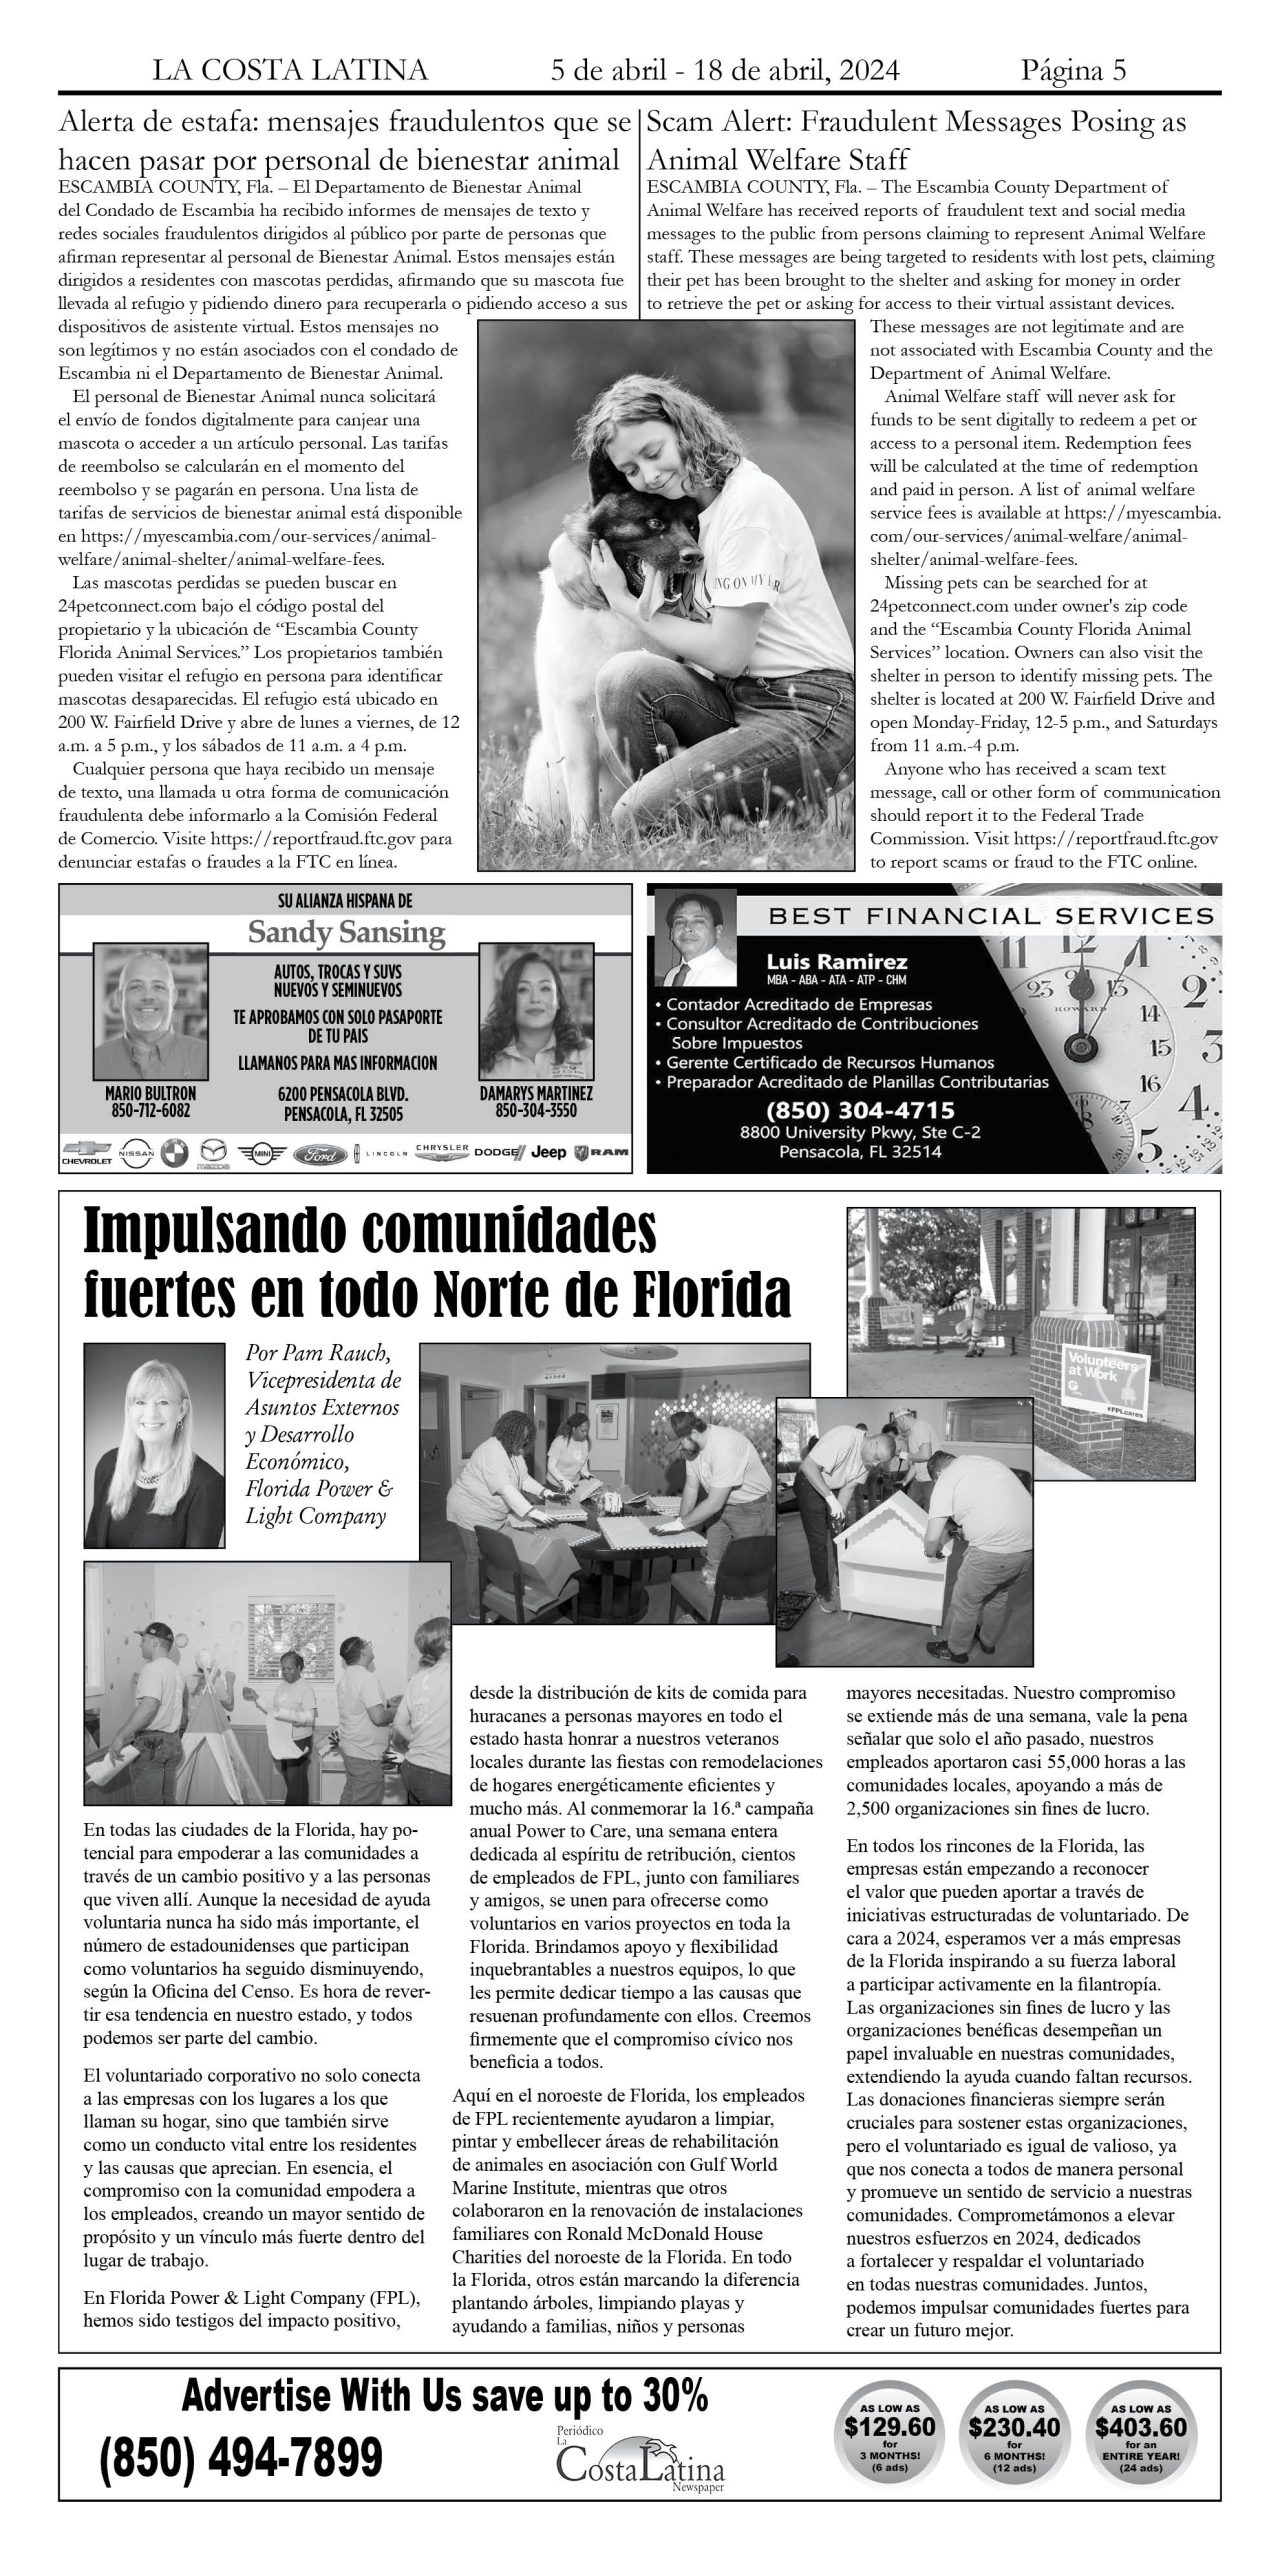 La Costa Latina April 5 - April 18, 2024 page 5